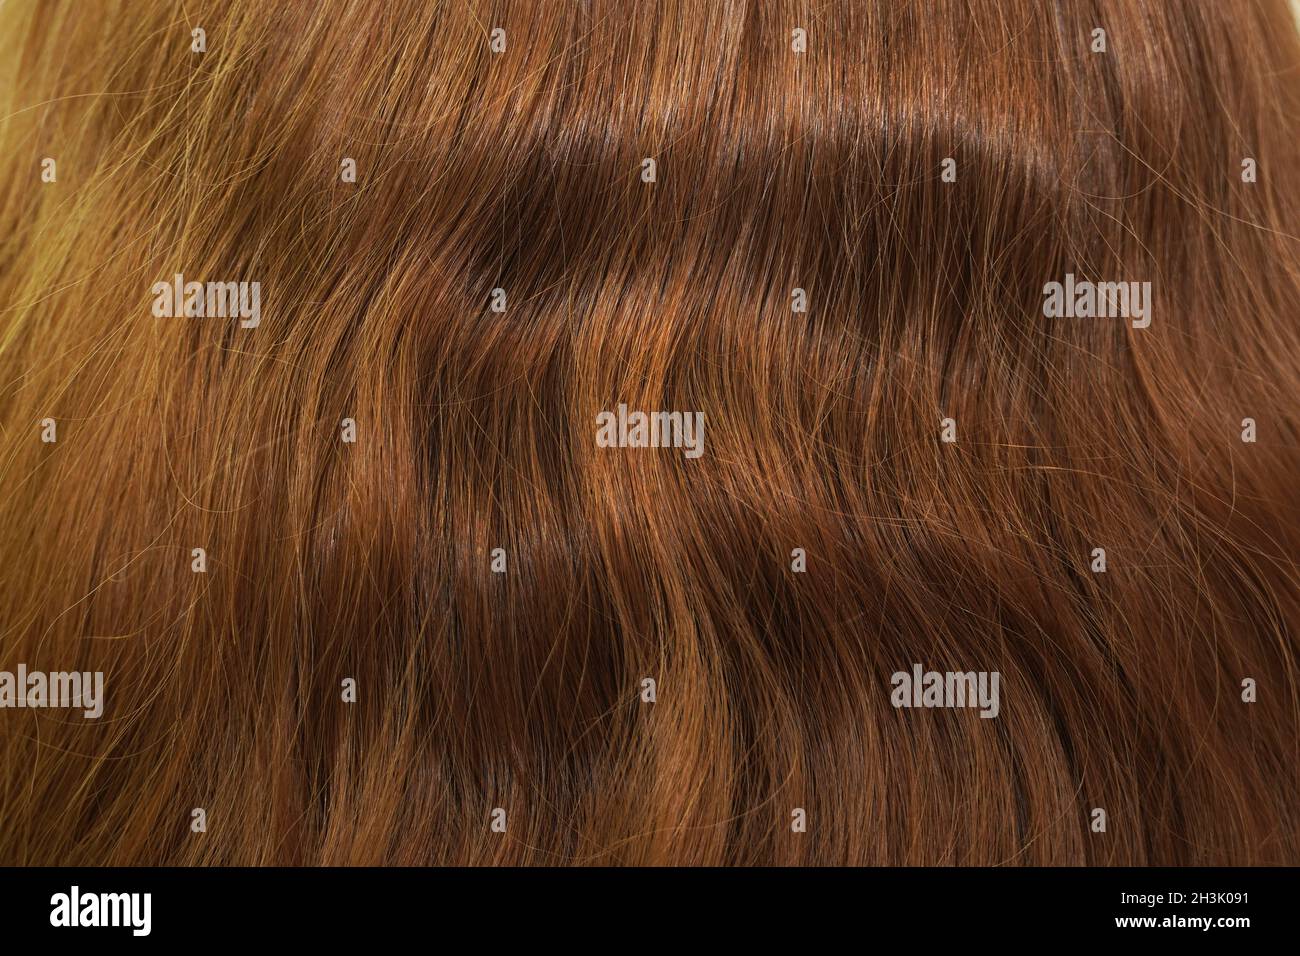 Cheveux longs et naturels ondulés bruns.Vue arrière. Banque D'Images